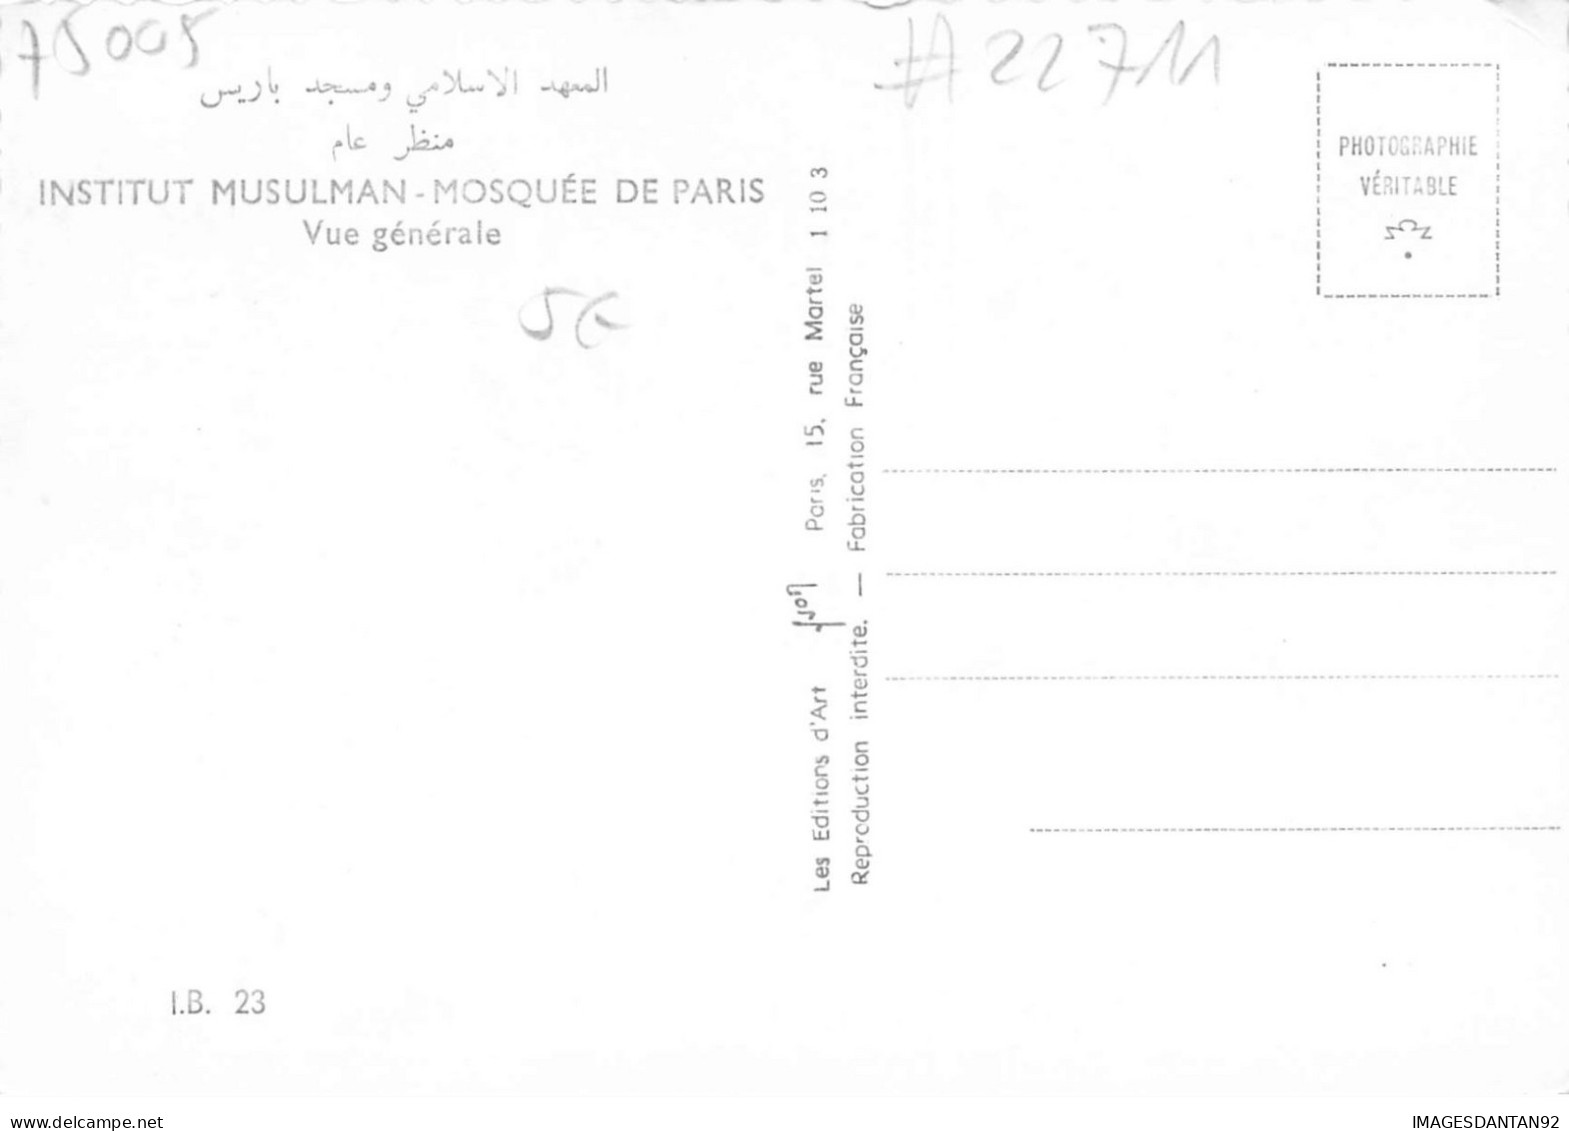 75 PARIS 05 #22711 INSTITUT MUSULMAN GRANDE MOSQUEE VUE GENERALE - Distrito: 05